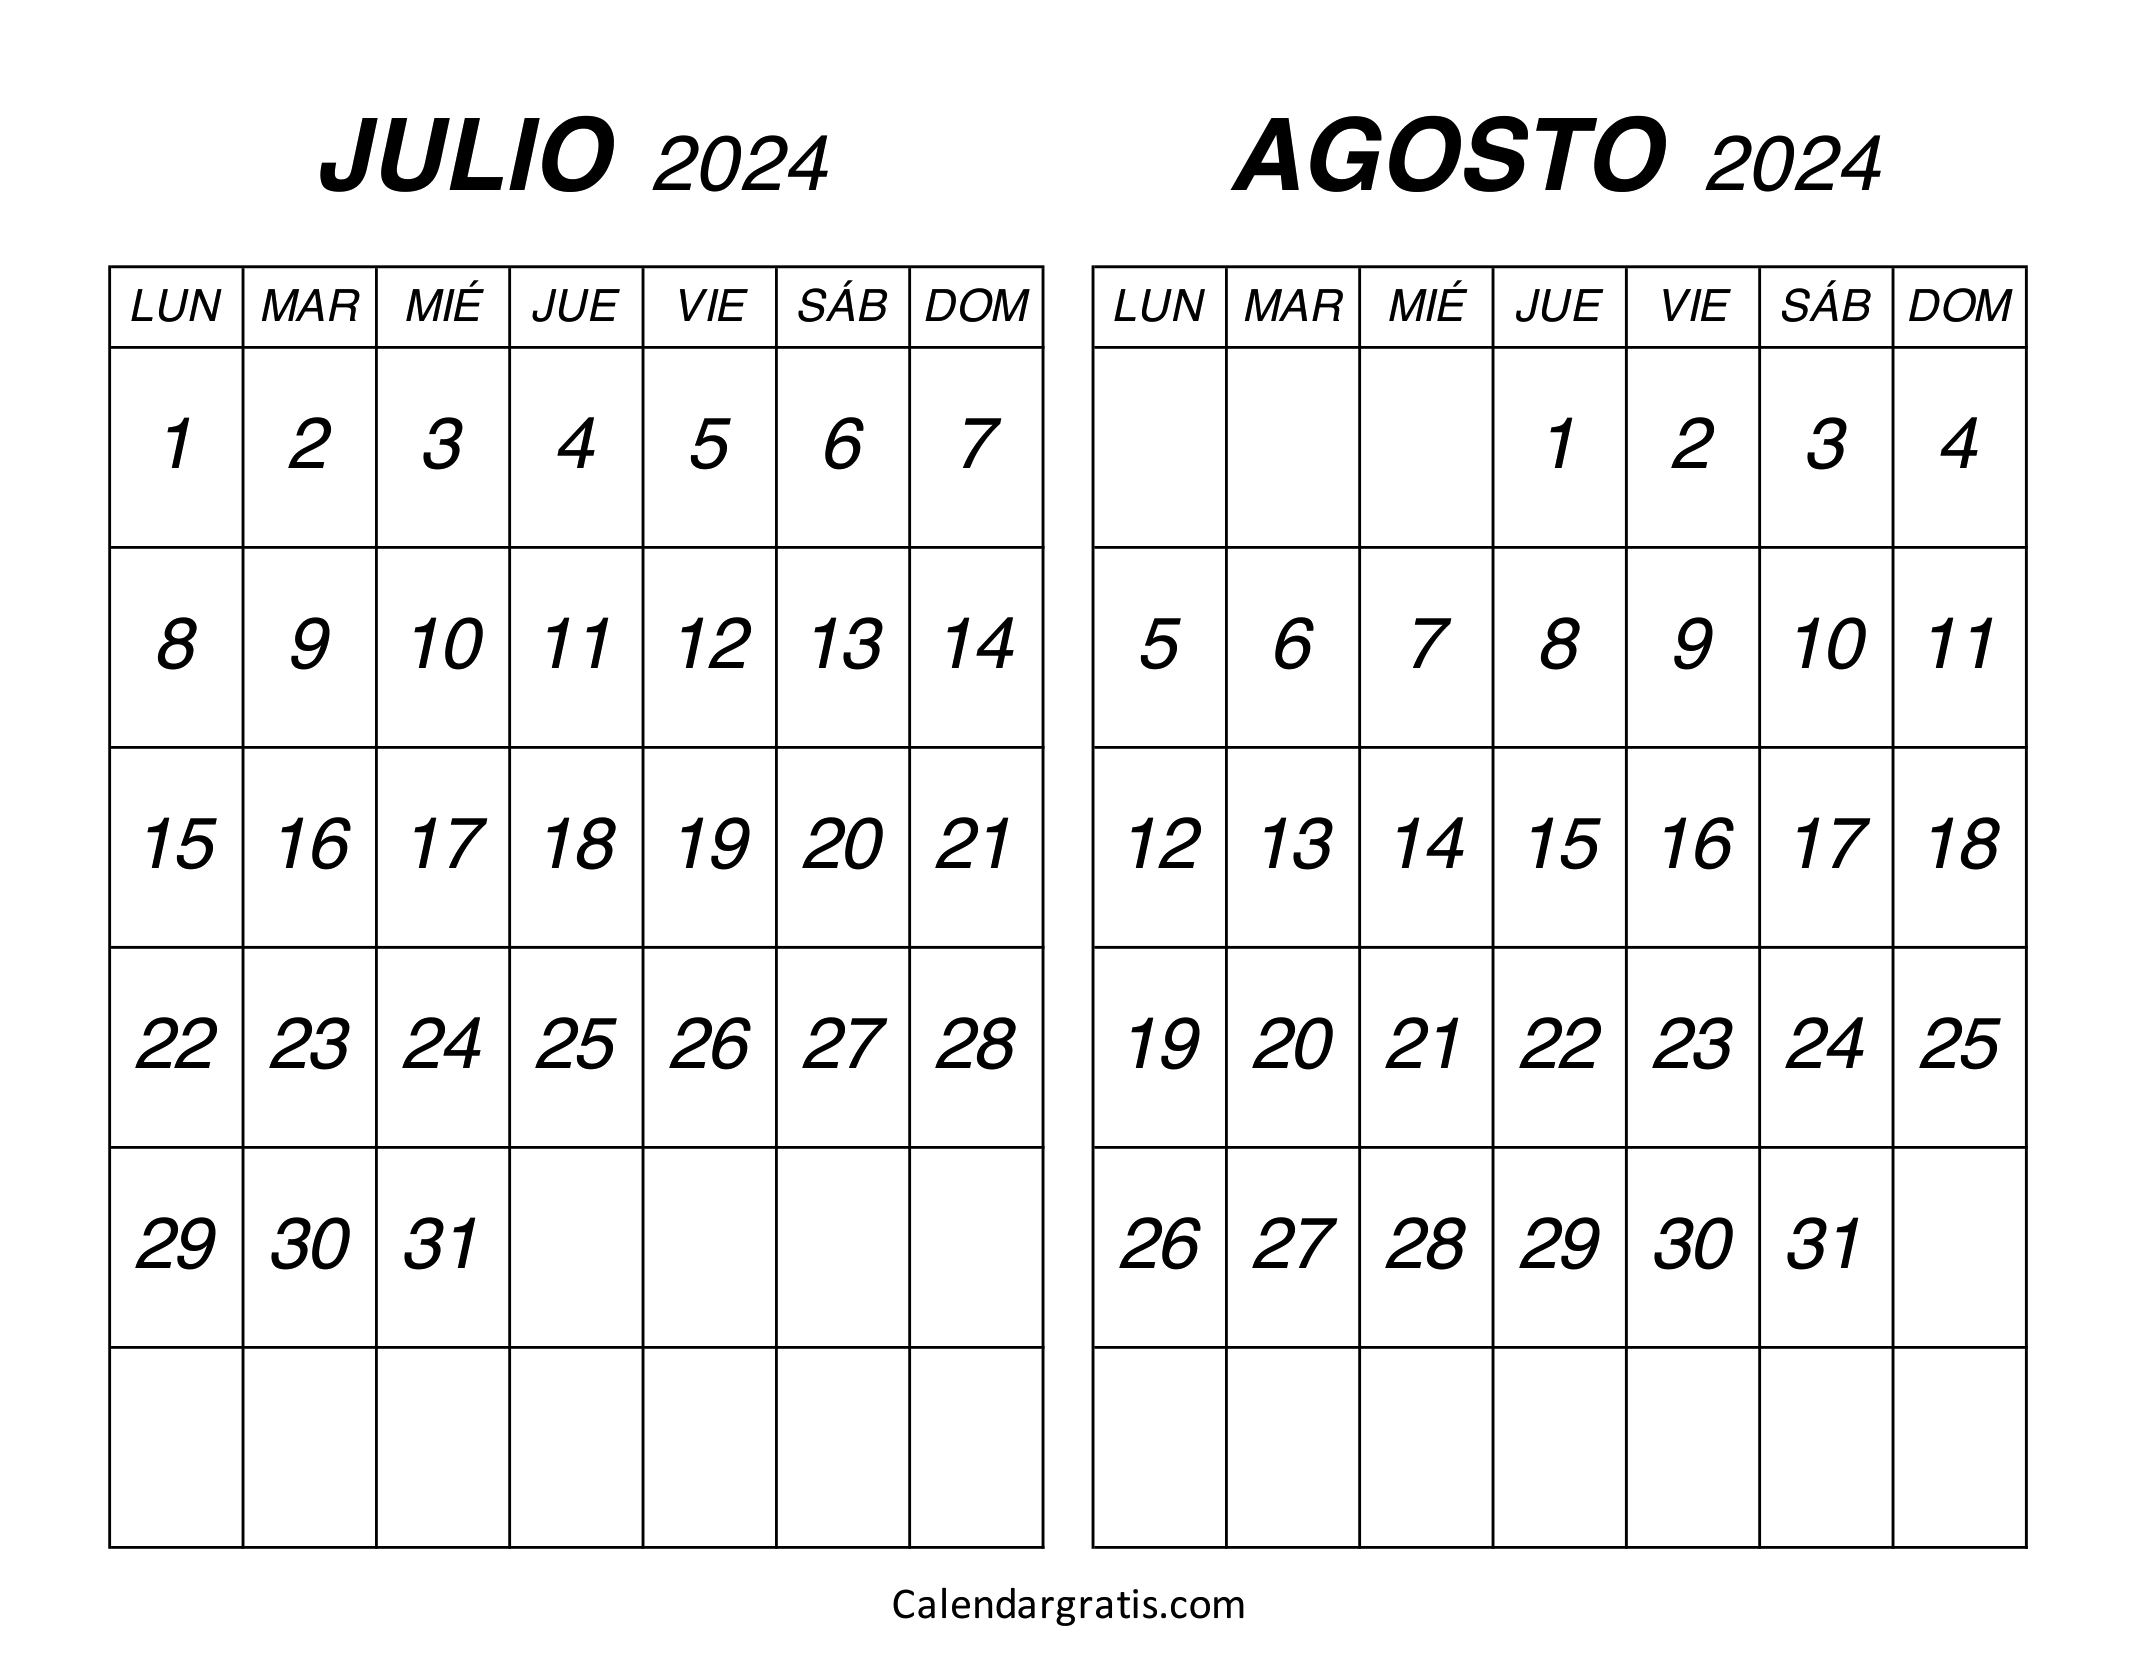 Calendario julio agosto 2024 para imprimir